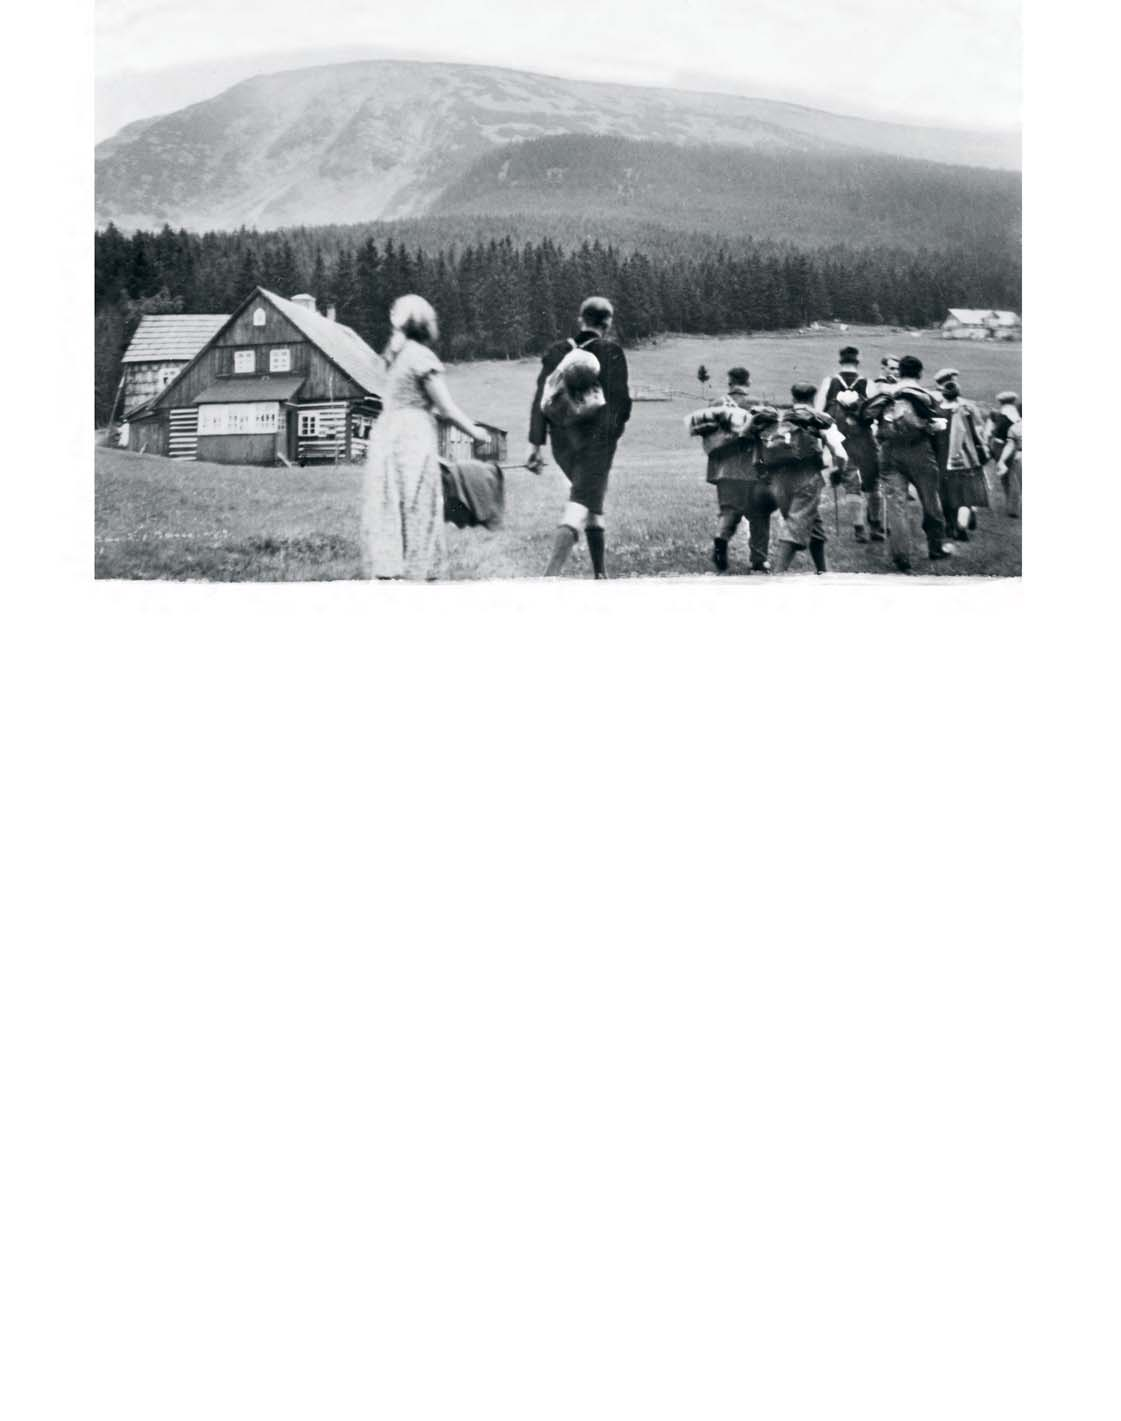 Irmaos vestidos como se fossem fazer trilha levavam publicac oes pelas montanhas dos Gigantes para a Alemanha montanhas.